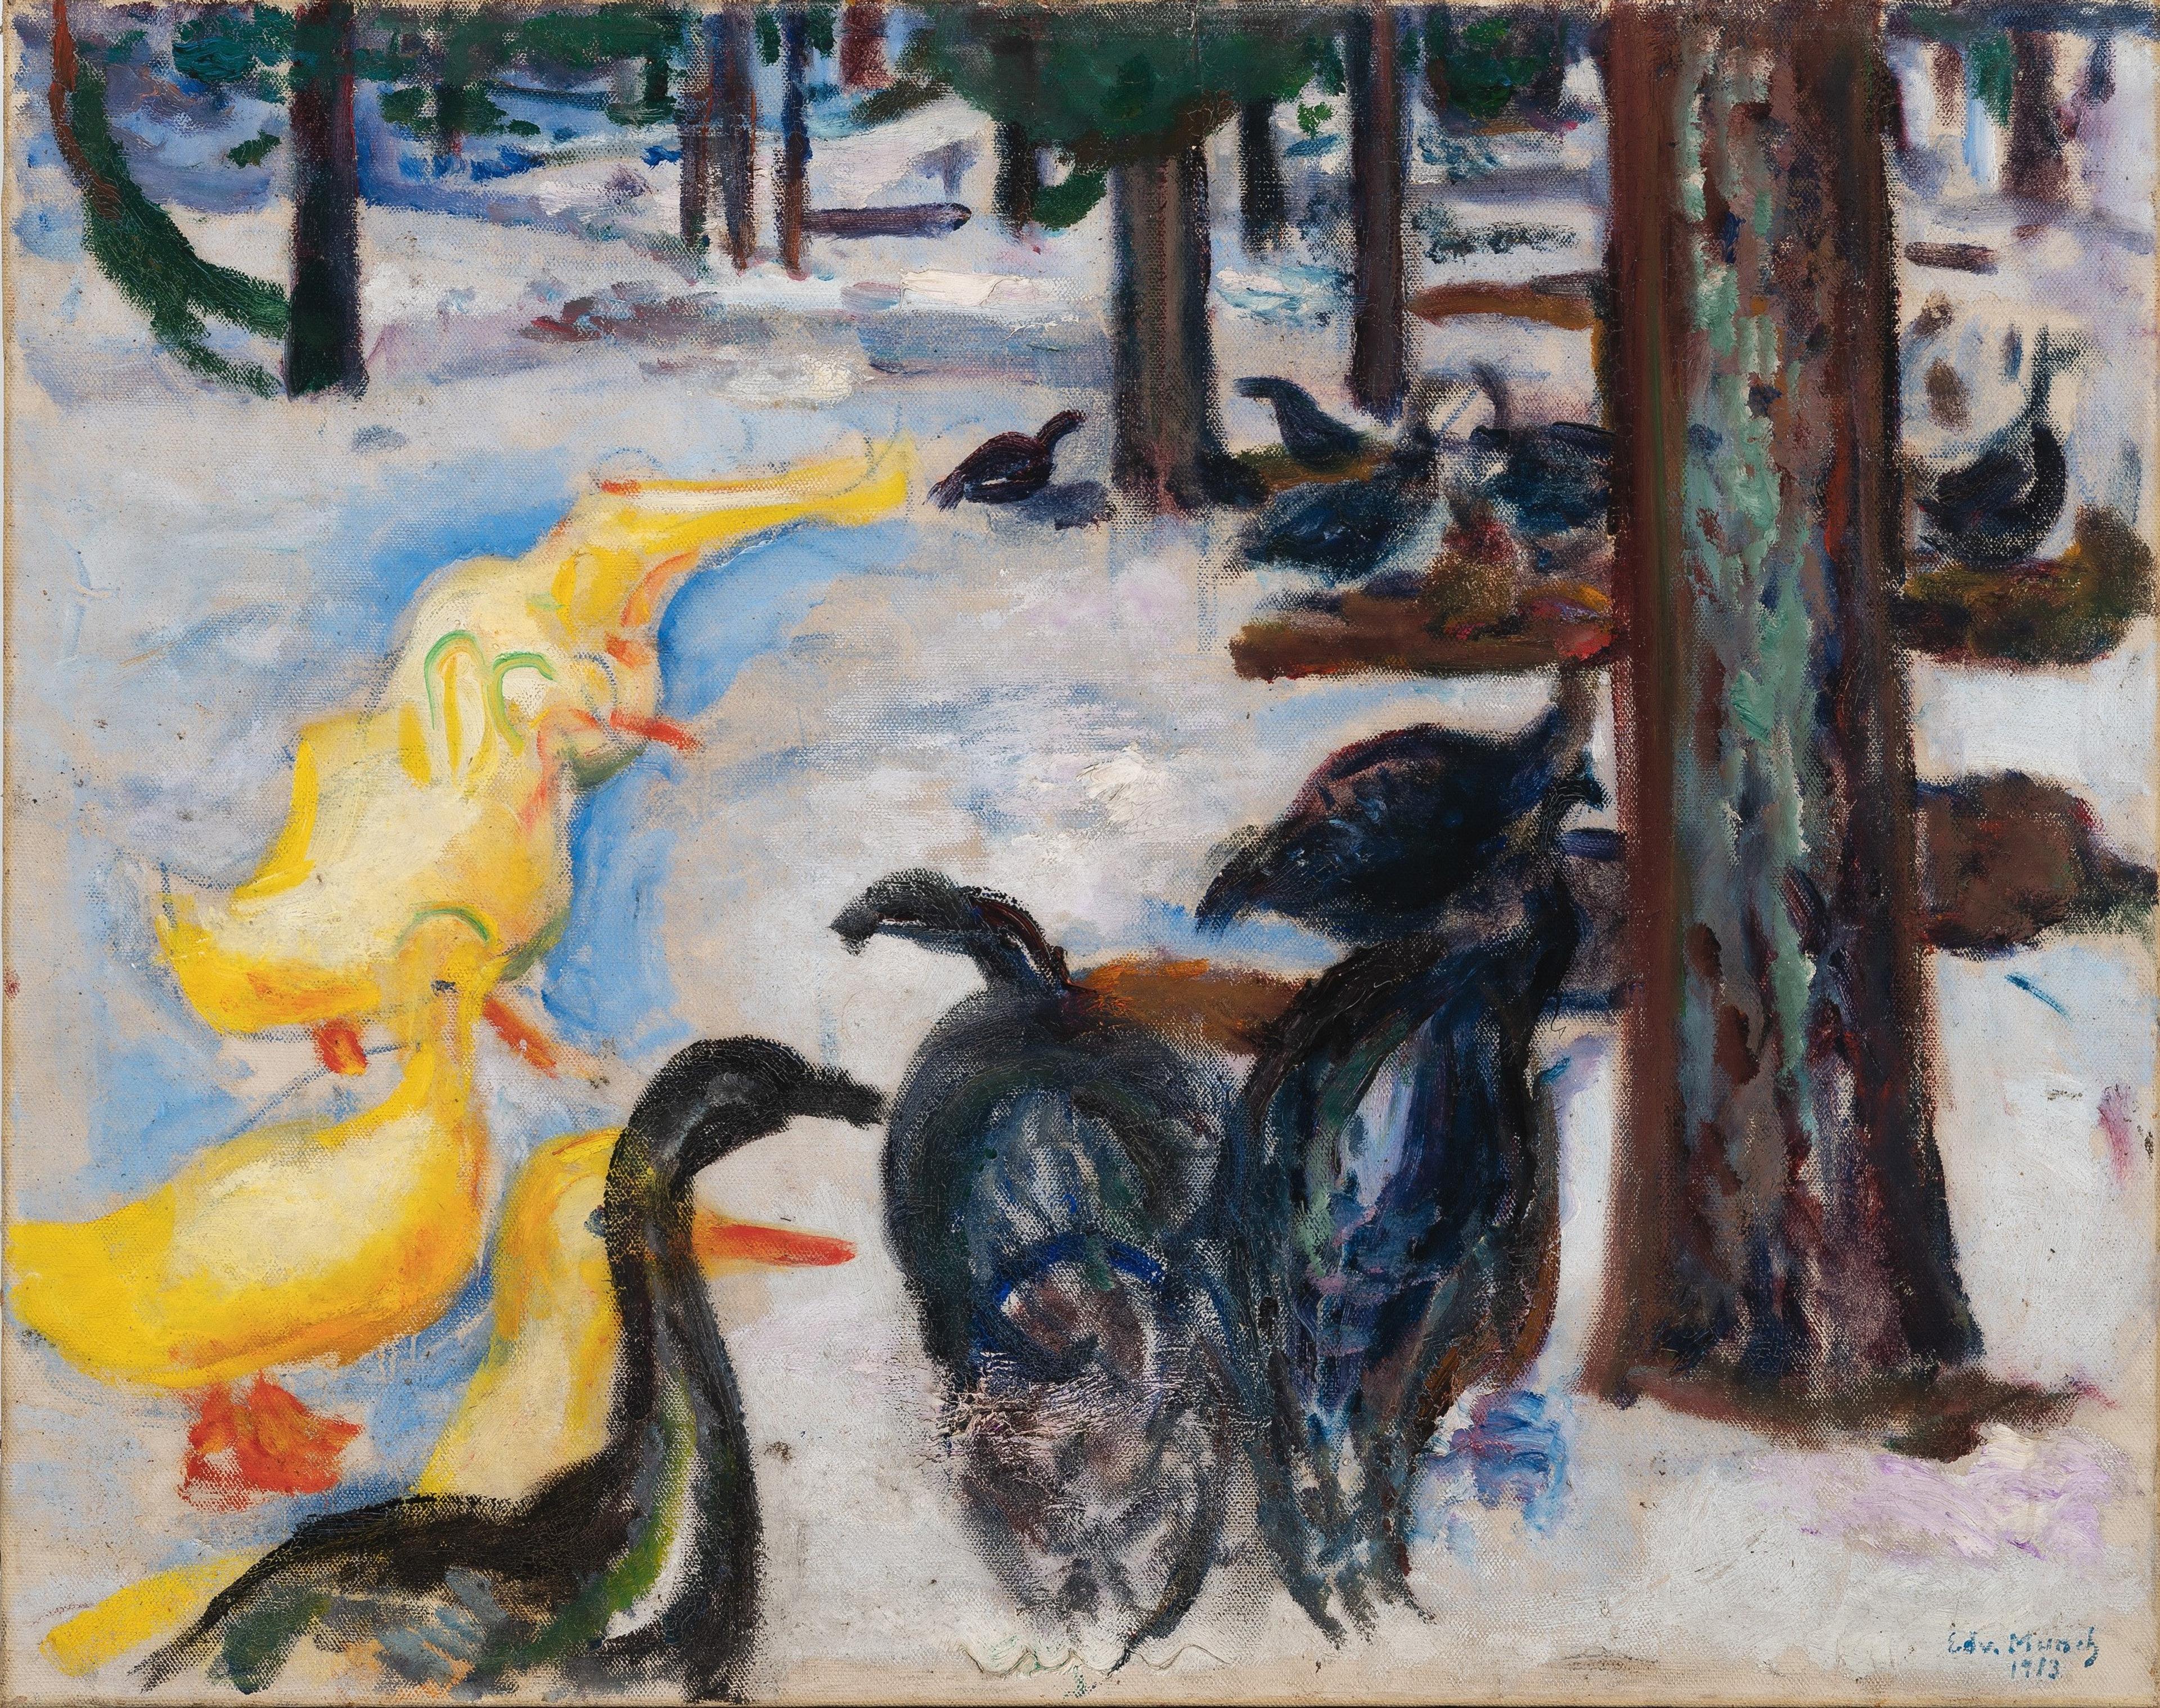 Maleri av en flokk med gule ender og sorte gjess, under trær, på en snødekket overflate